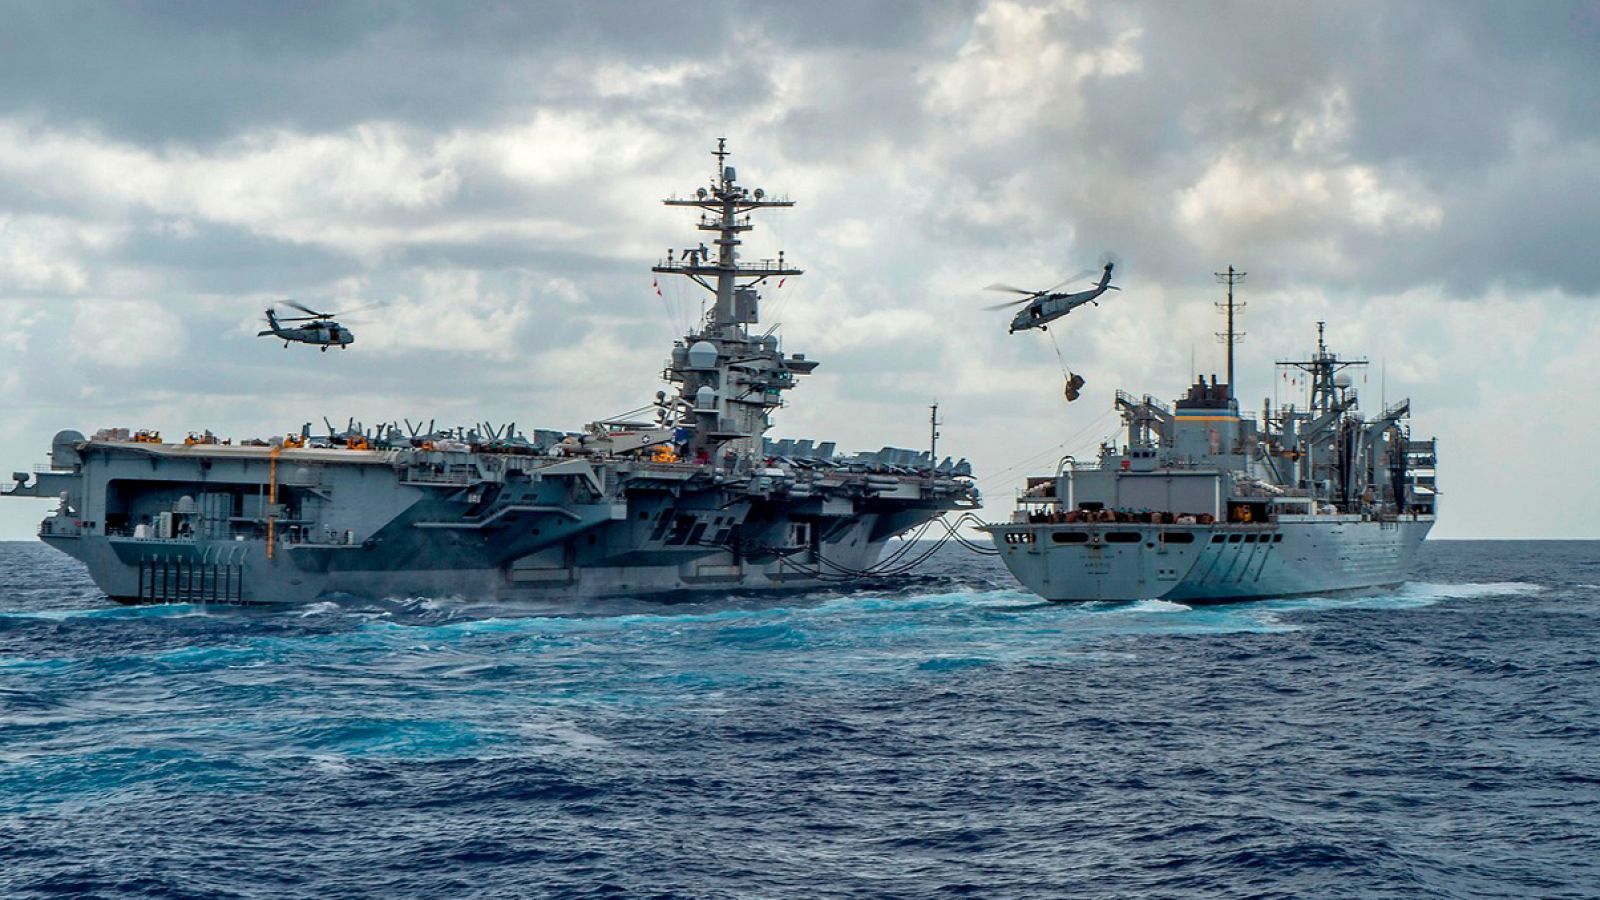 El portaaviones 'USS Abraham Lincoln' durante un ejercicio en el mar. Foto: MCSN Jason Waite / Oficina de Información de la Marina / AFP